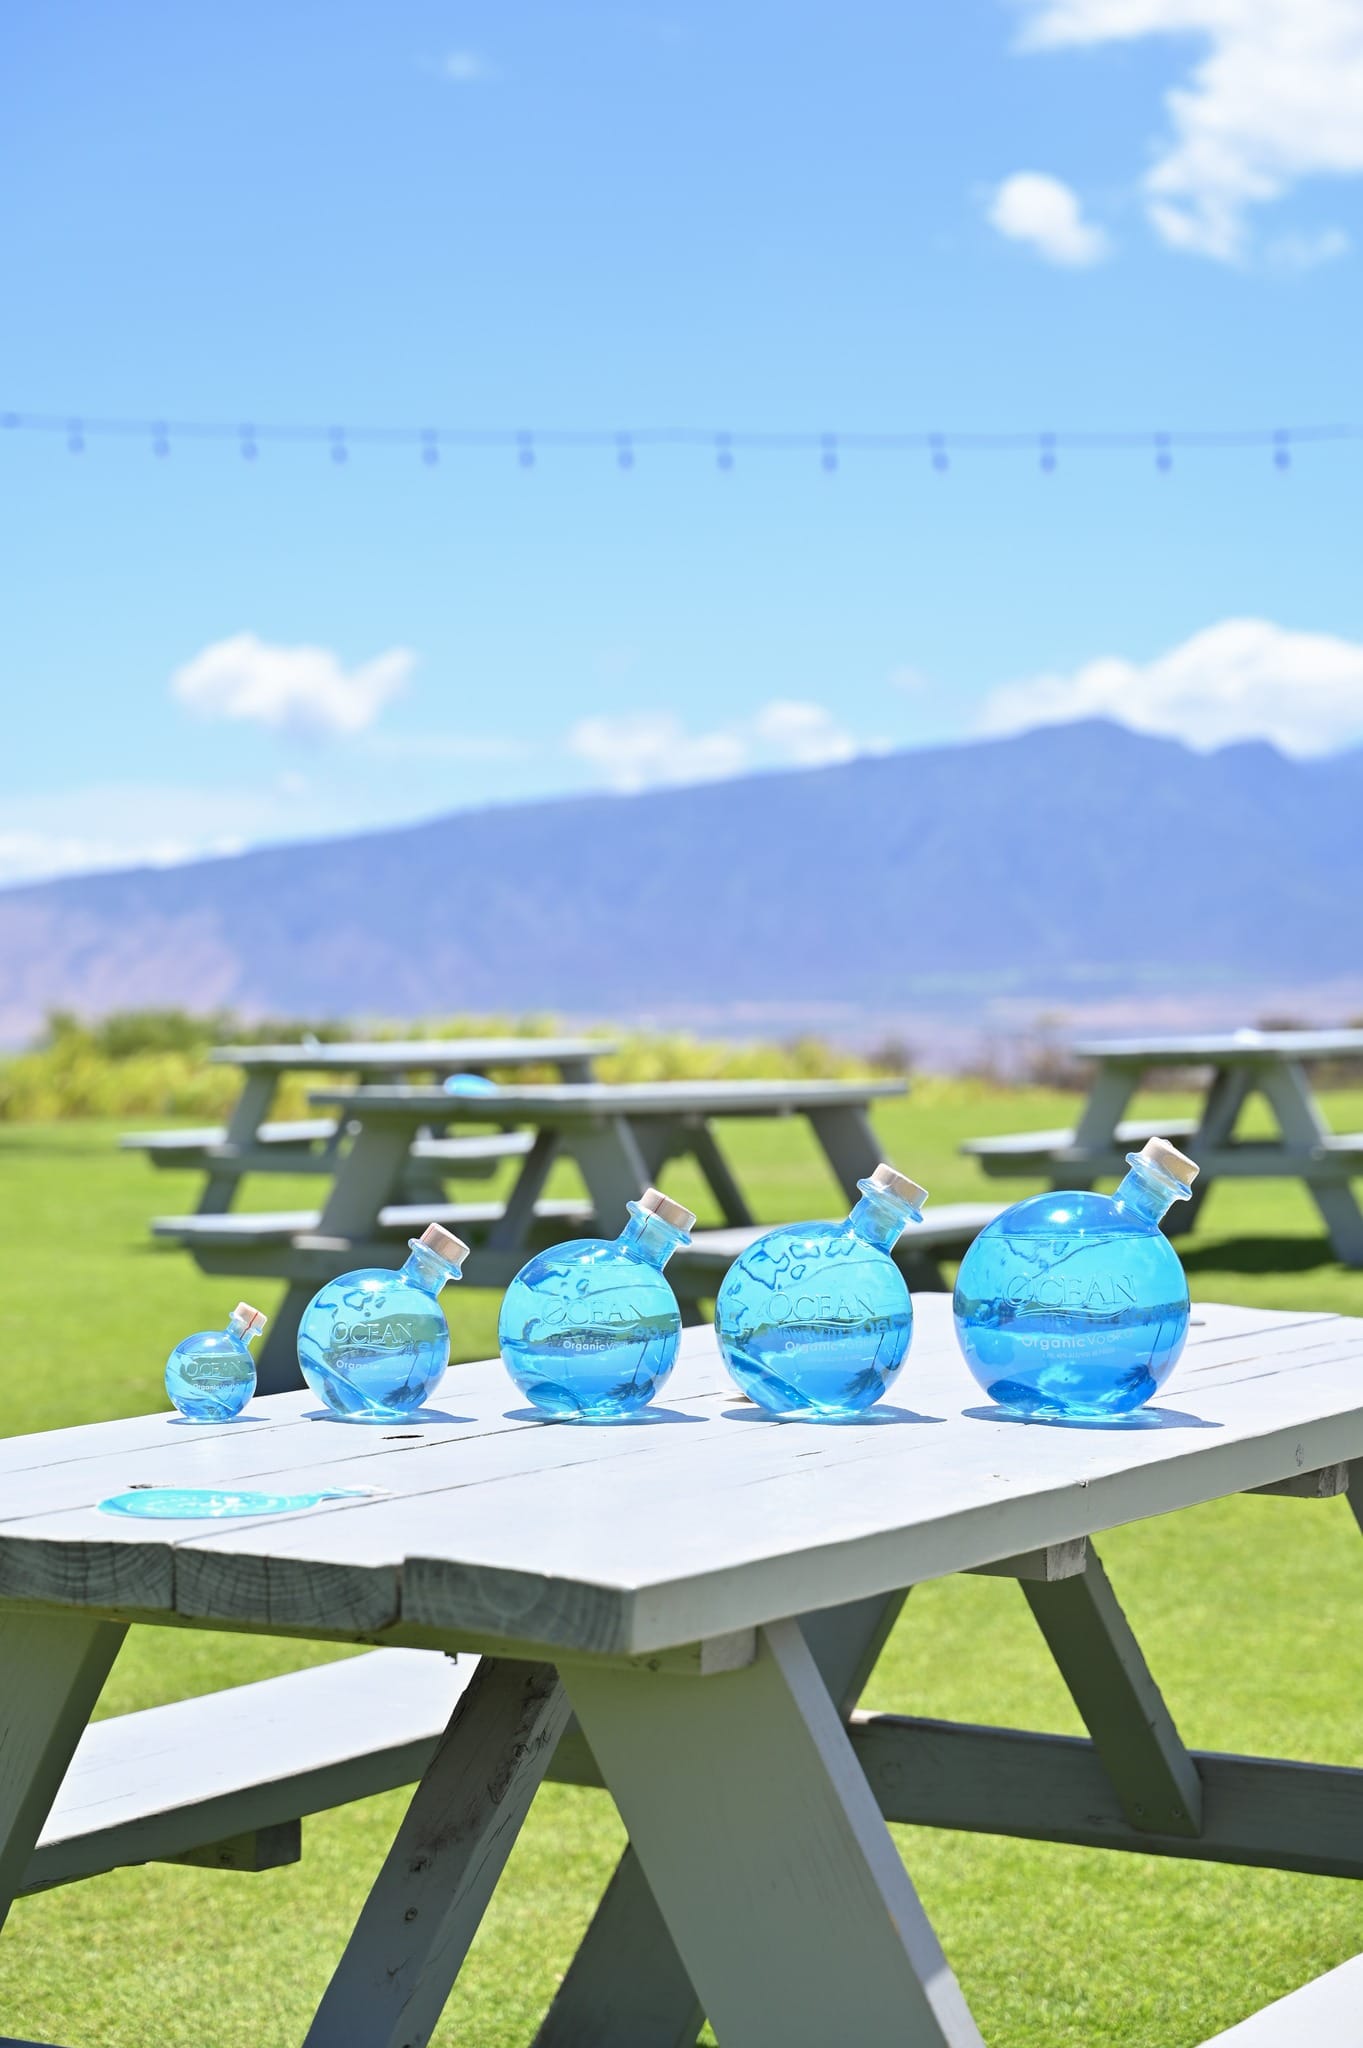 Ocean vodka bottles on picnic table